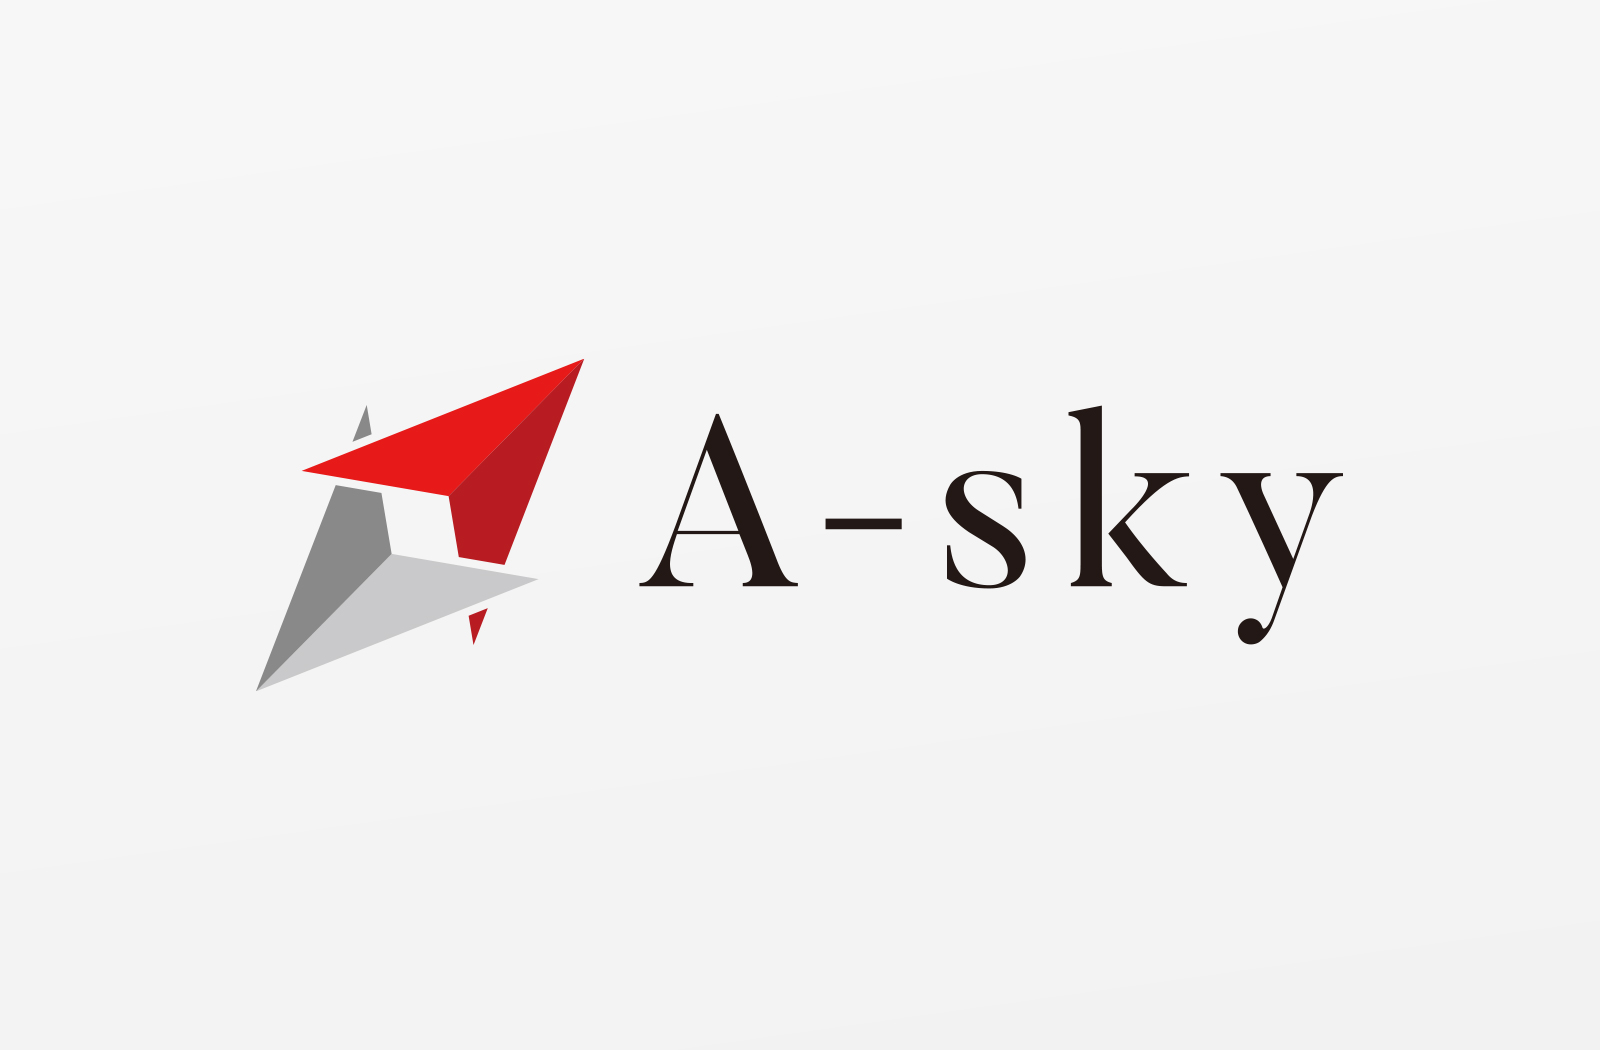 「株式会社A-sky」様のロゴデザイン